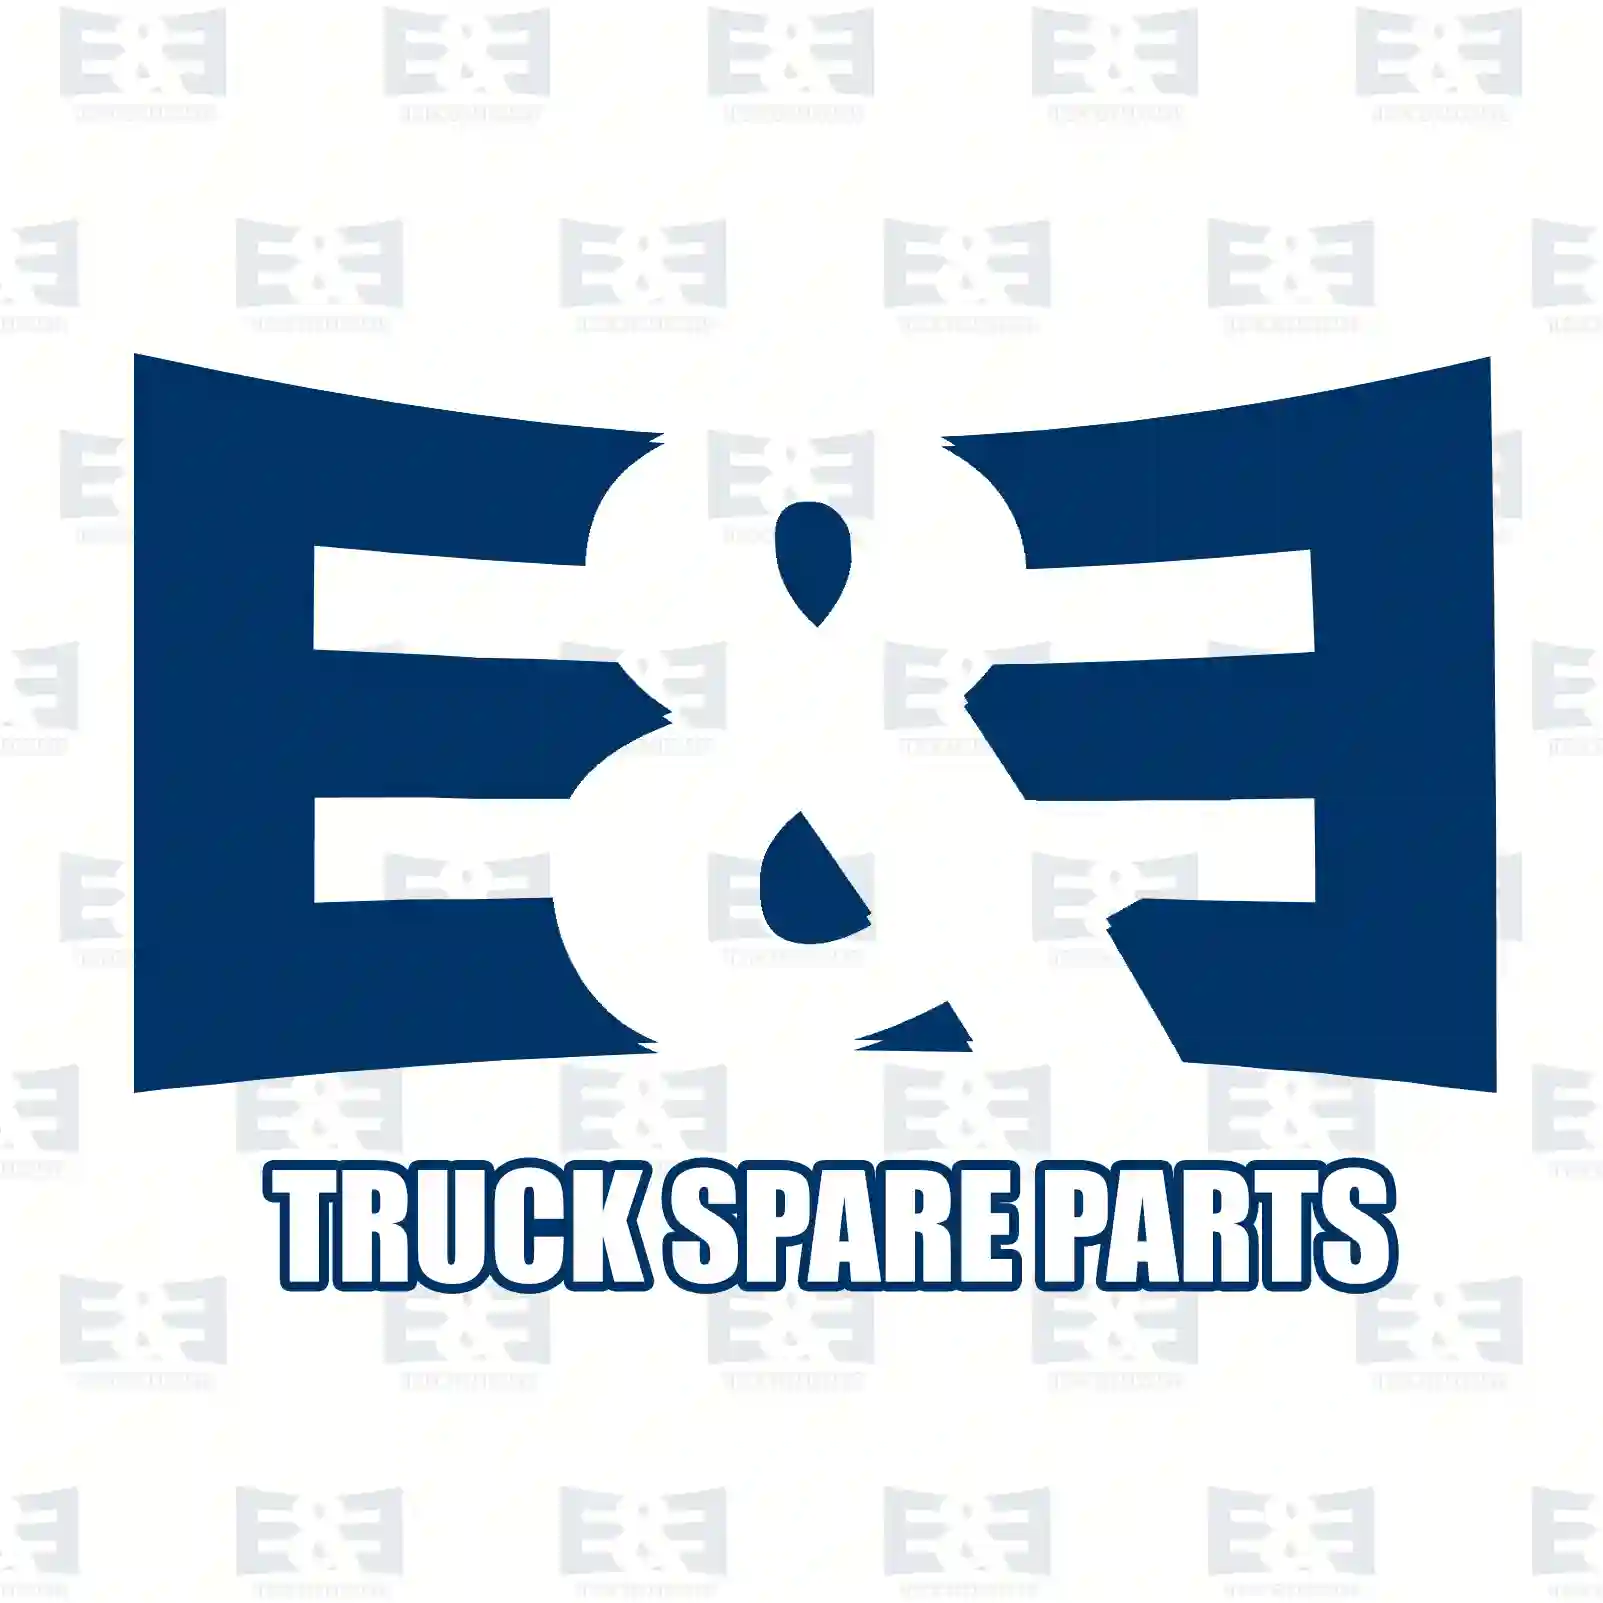 Brake cylinder, 2E2296385, 20927146, 3027758, 3035900, , ||  2E2296385 E&E Truck Spare Parts | Truck Spare Parts, Auotomotive Spare Parts Brake cylinder, 2E2296385, 20927146, 3027758, 3035900, , ||  2E2296385 E&E Truck Spare Parts | Truck Spare Parts, Auotomotive Spare Parts